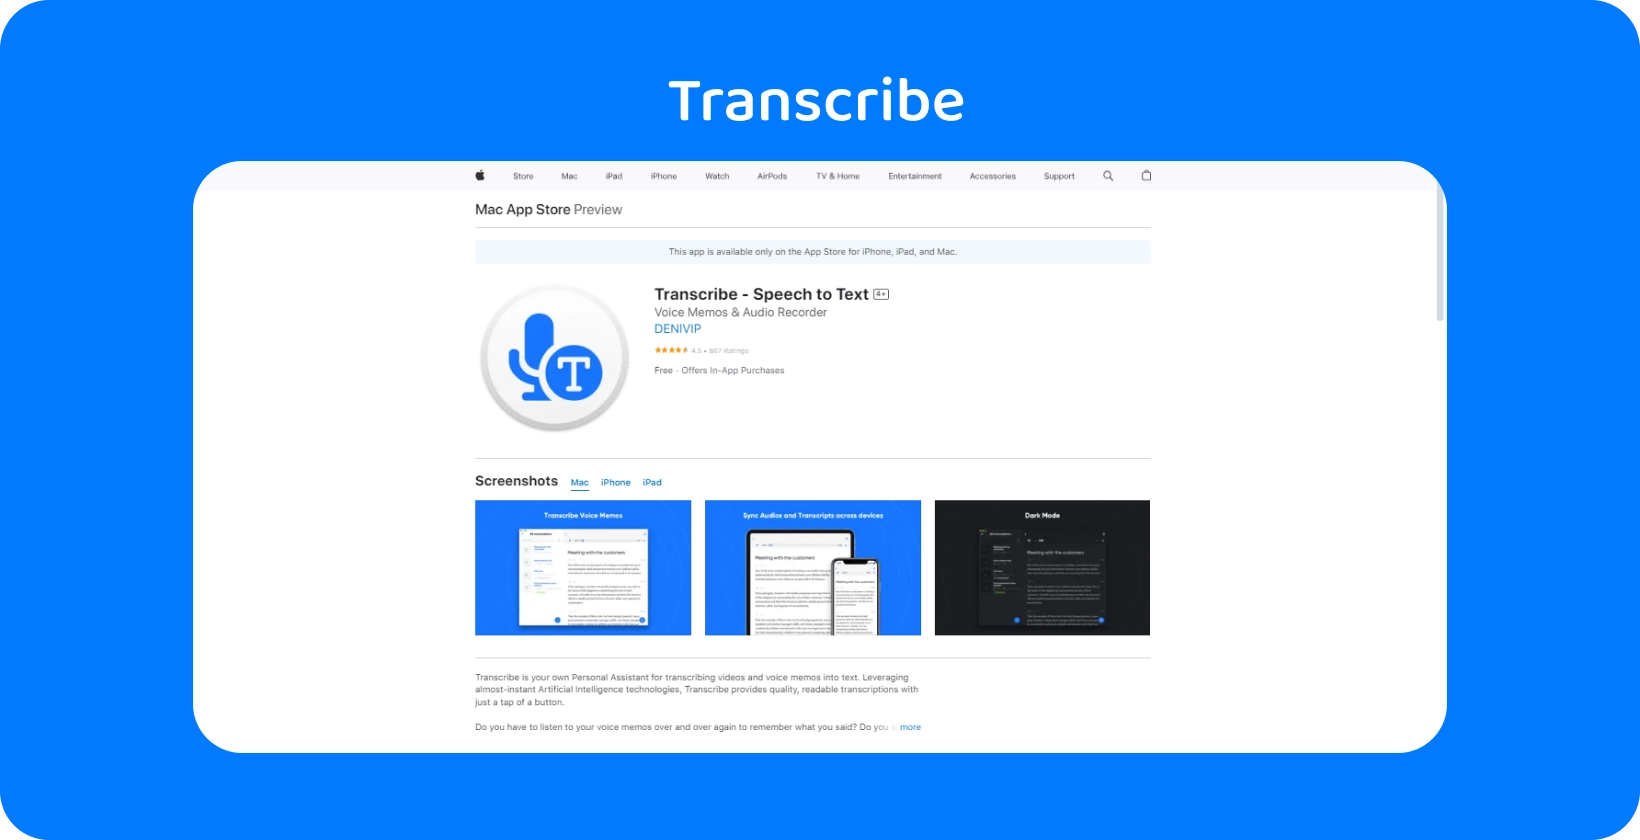 لقطة شاشة لتطبيق Transcribe على Mac App Store ، مع إبراز إمكانات تحويل الكلام إلى نص.